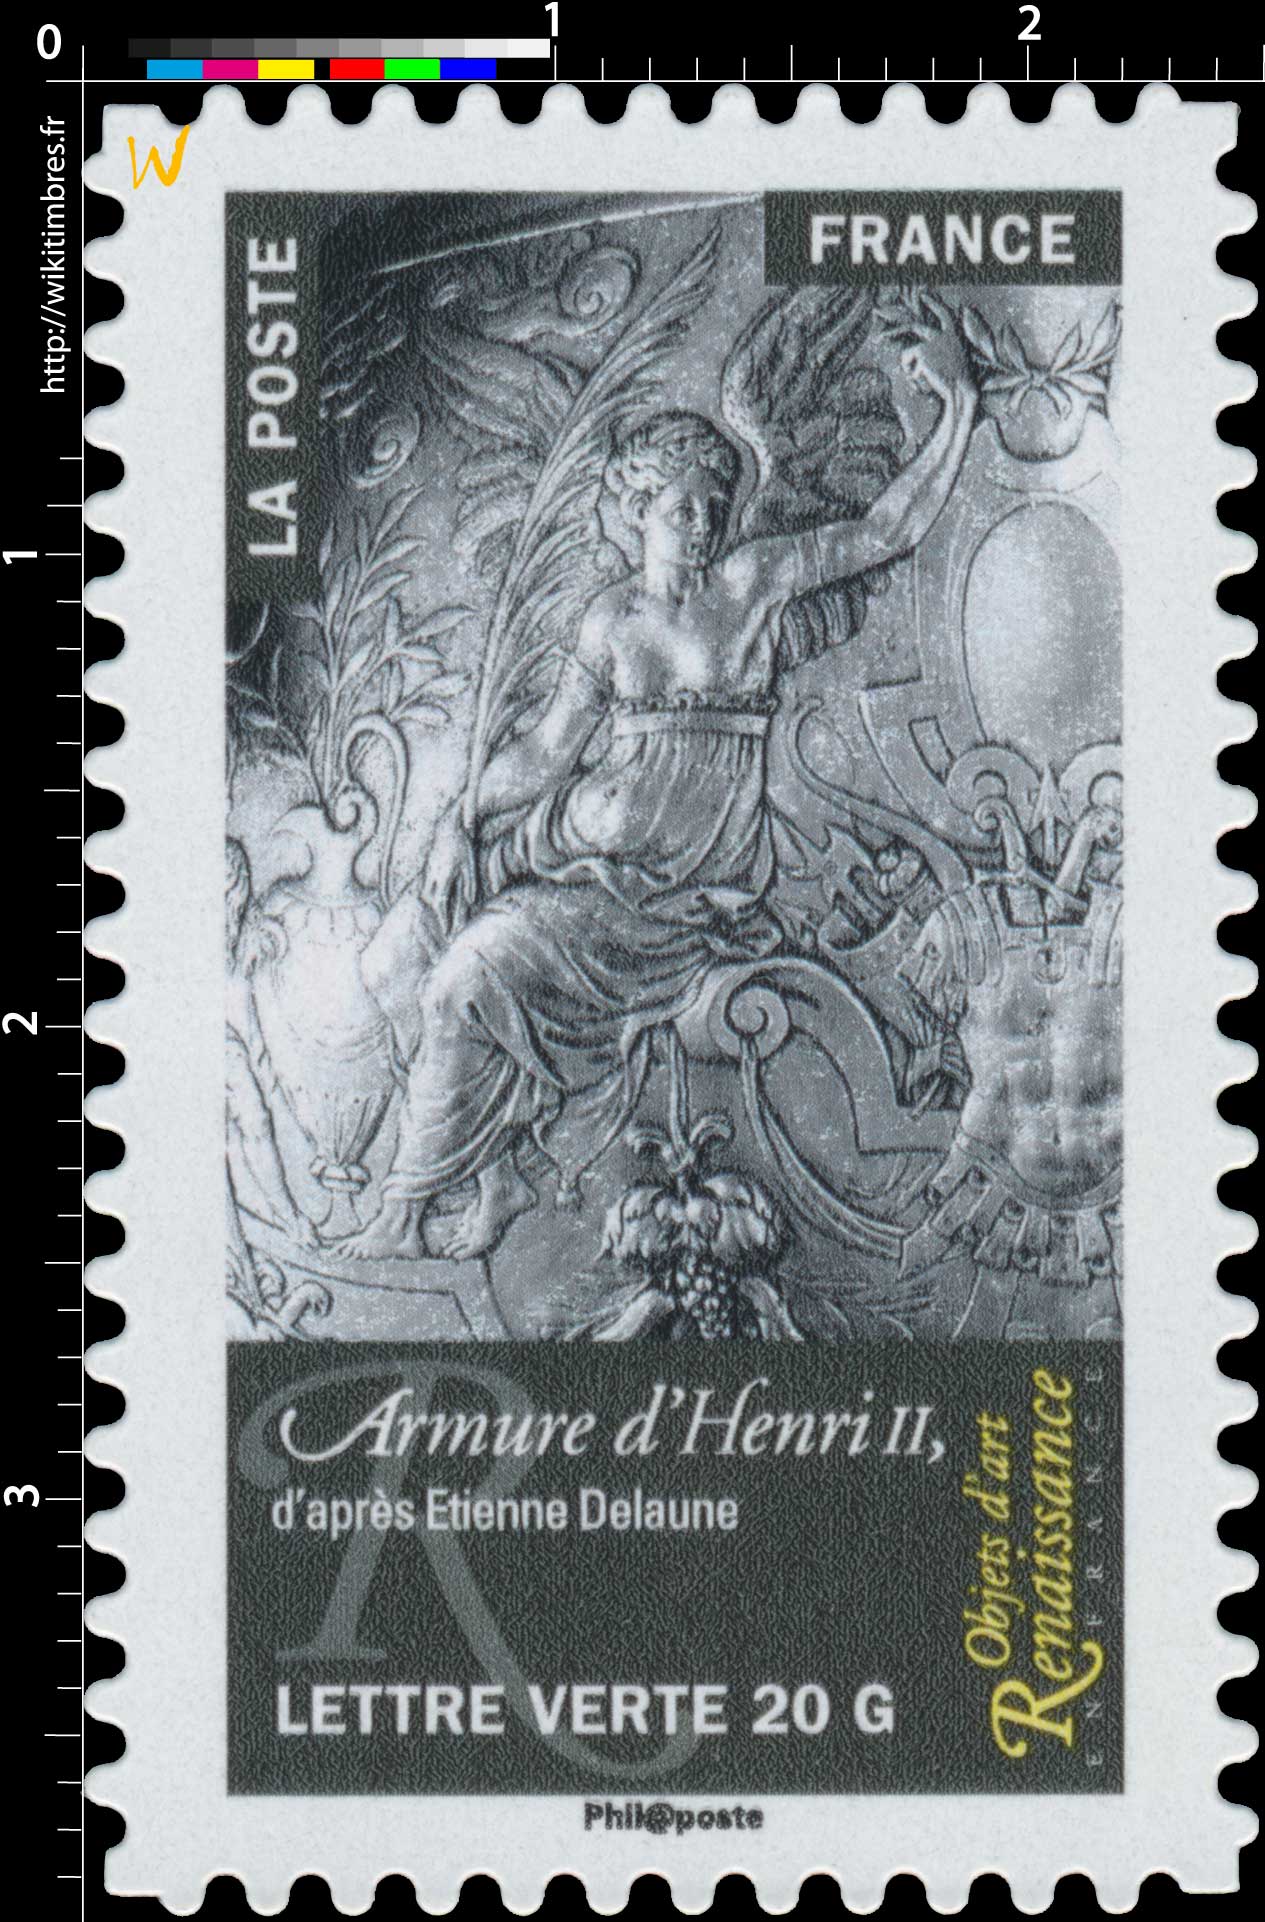 2014 Objets d'art  –  Renaissance en France  –  Armure d'Henri II, d'après Etienne Delaune